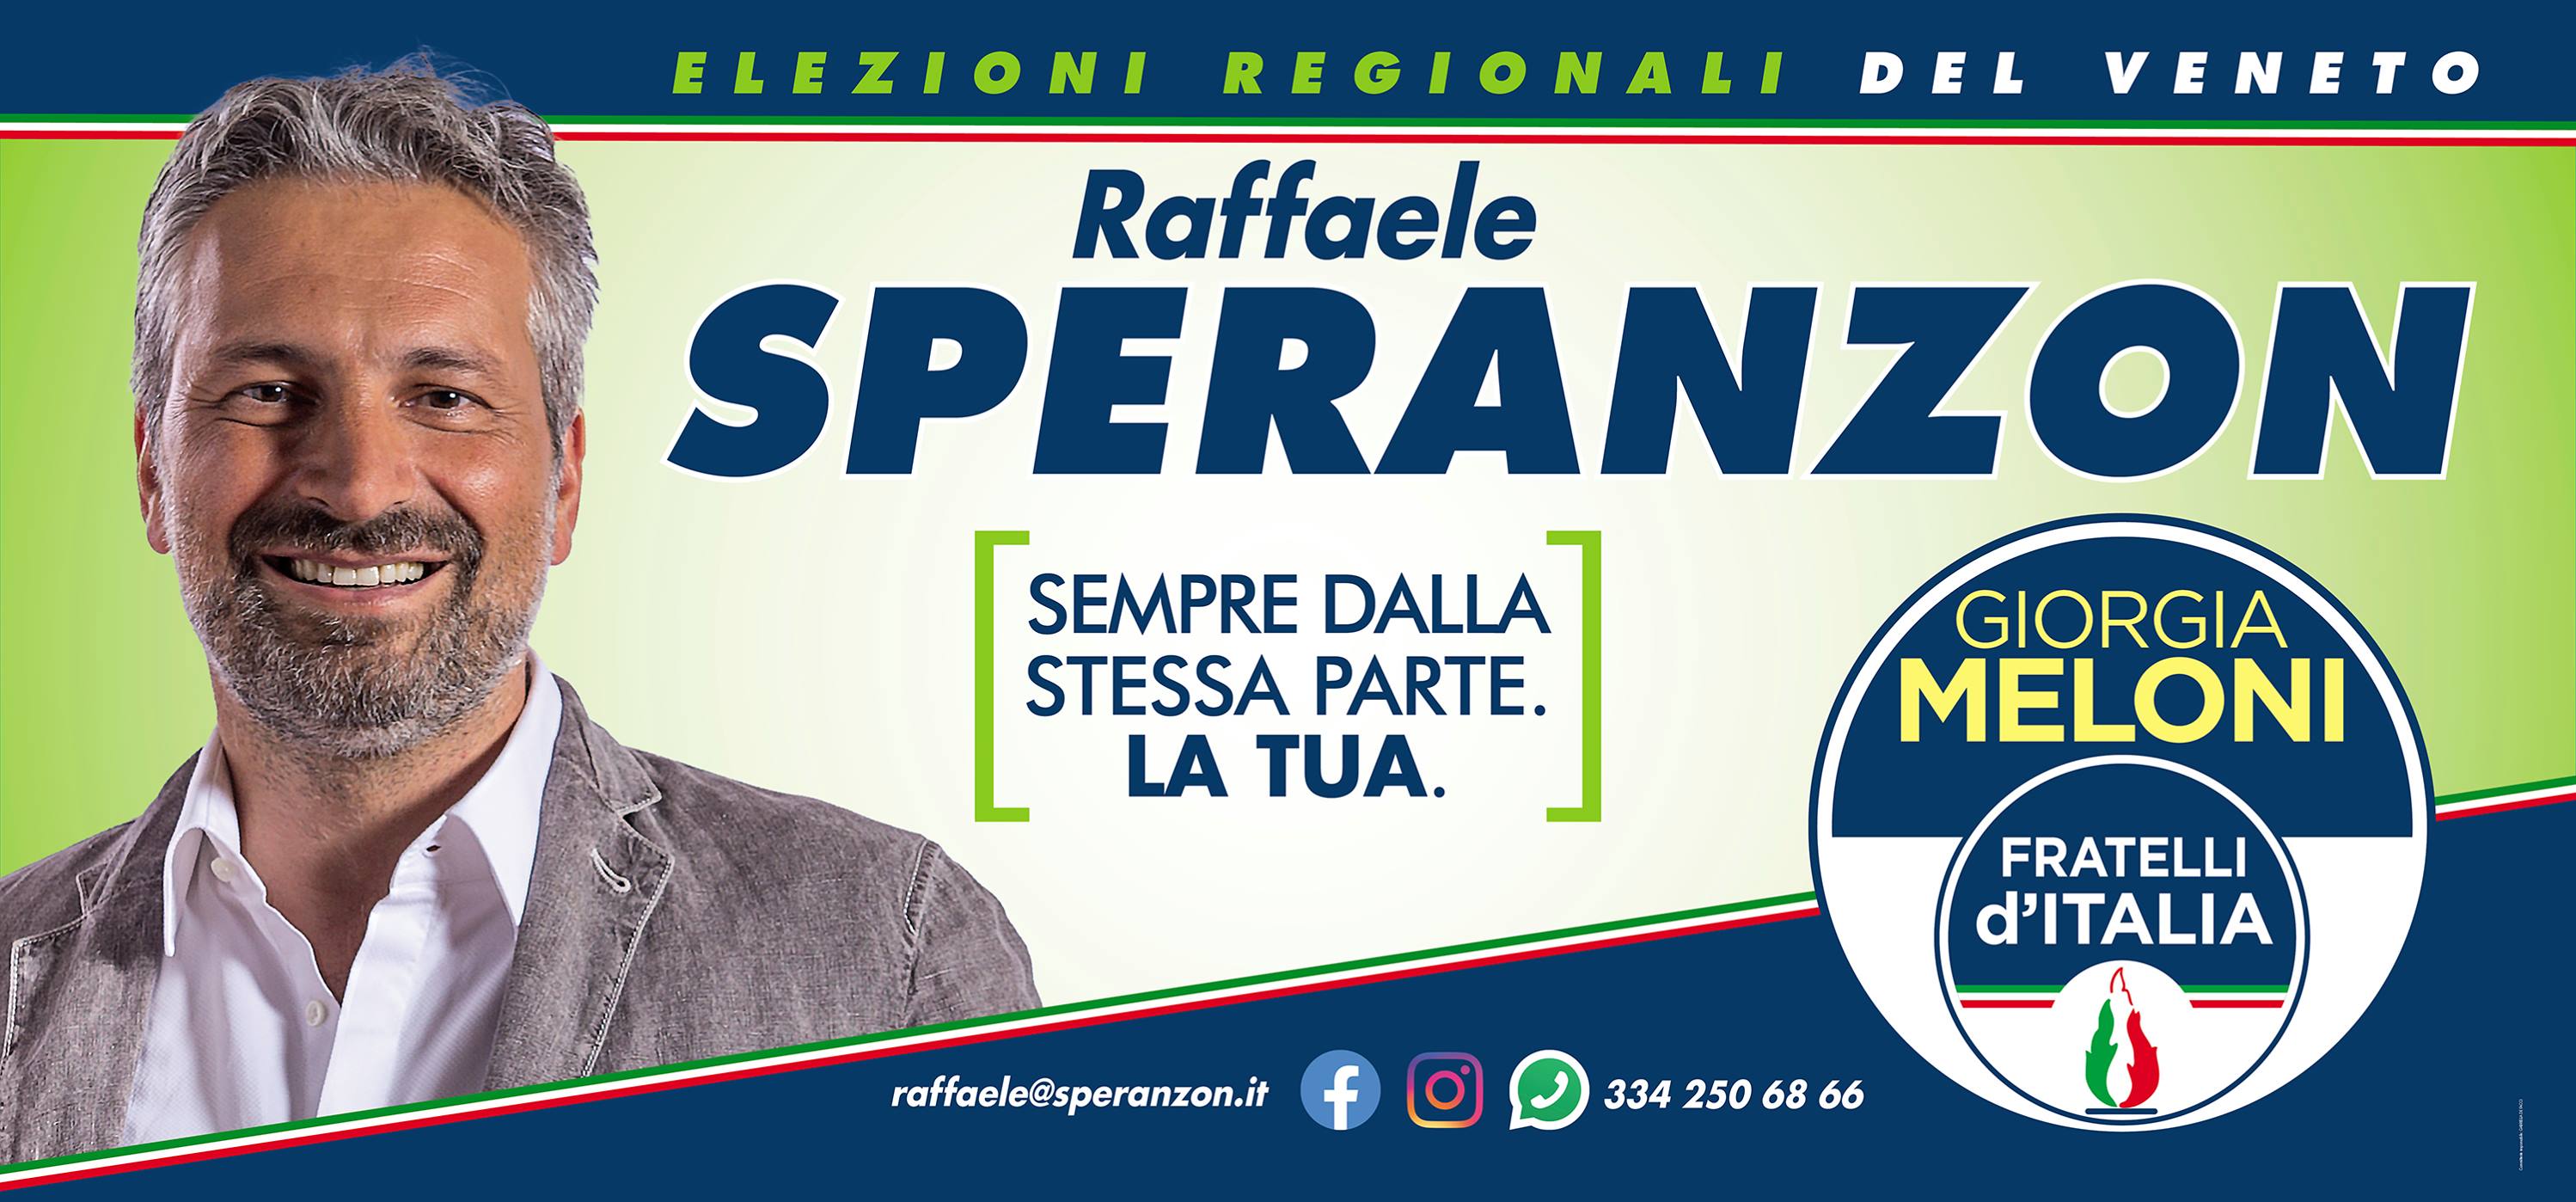 Raffaele Speranzon 2020